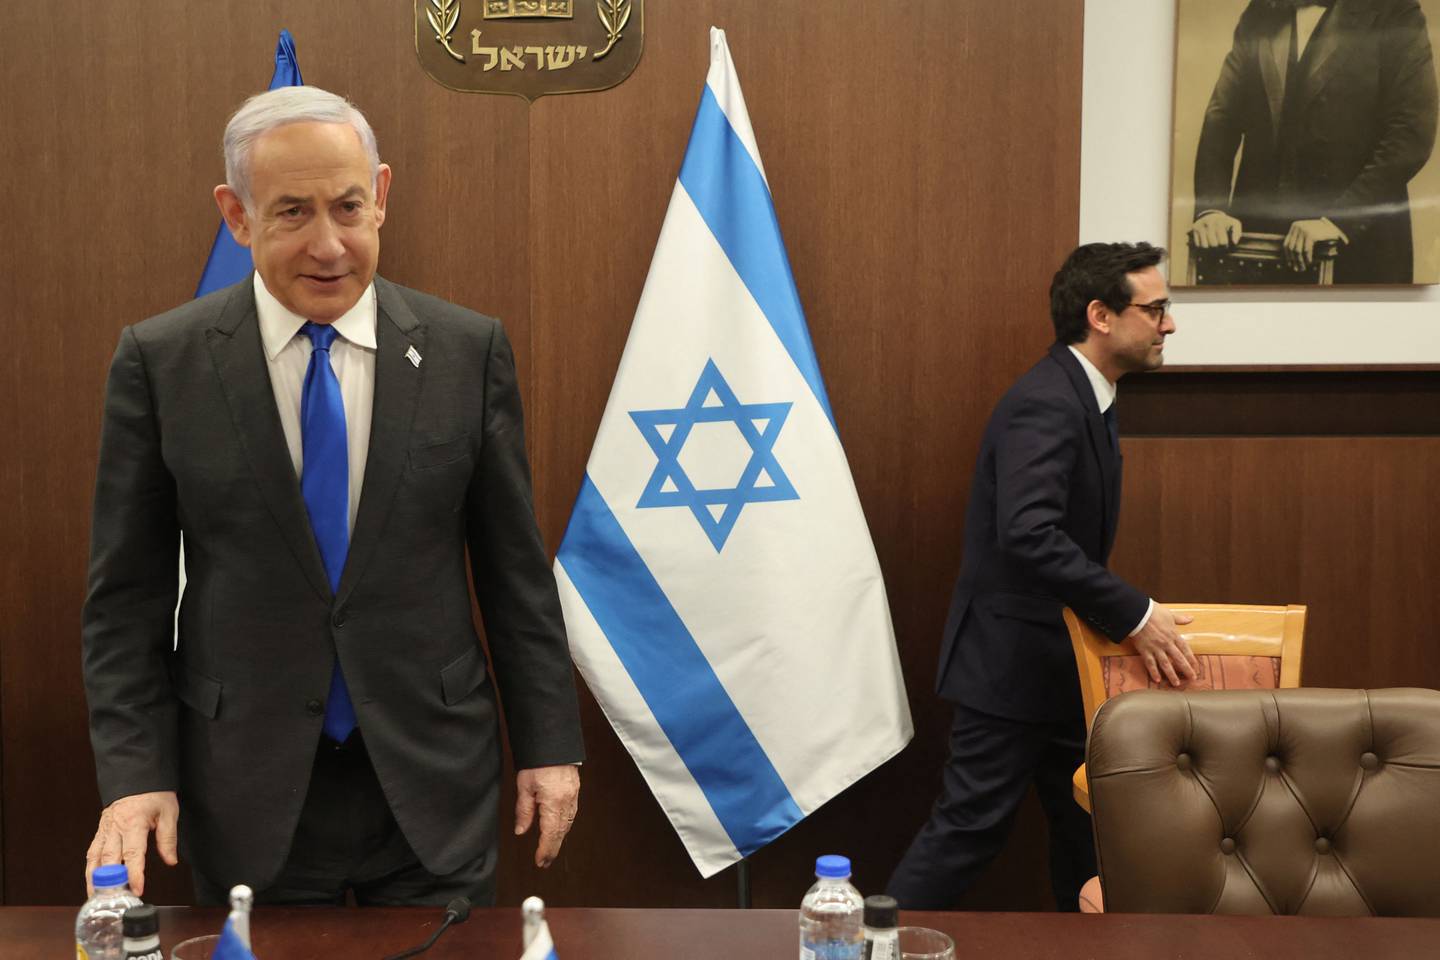 Benjamin Netanyahu, primer ministro de Israel, recibe constantes críticas del entorno político del país por la manera en la que se desarrolla la guerra contra Hamás en Gaza.  Foto: GIL COHEN-MAGEN / POOL / AFP)